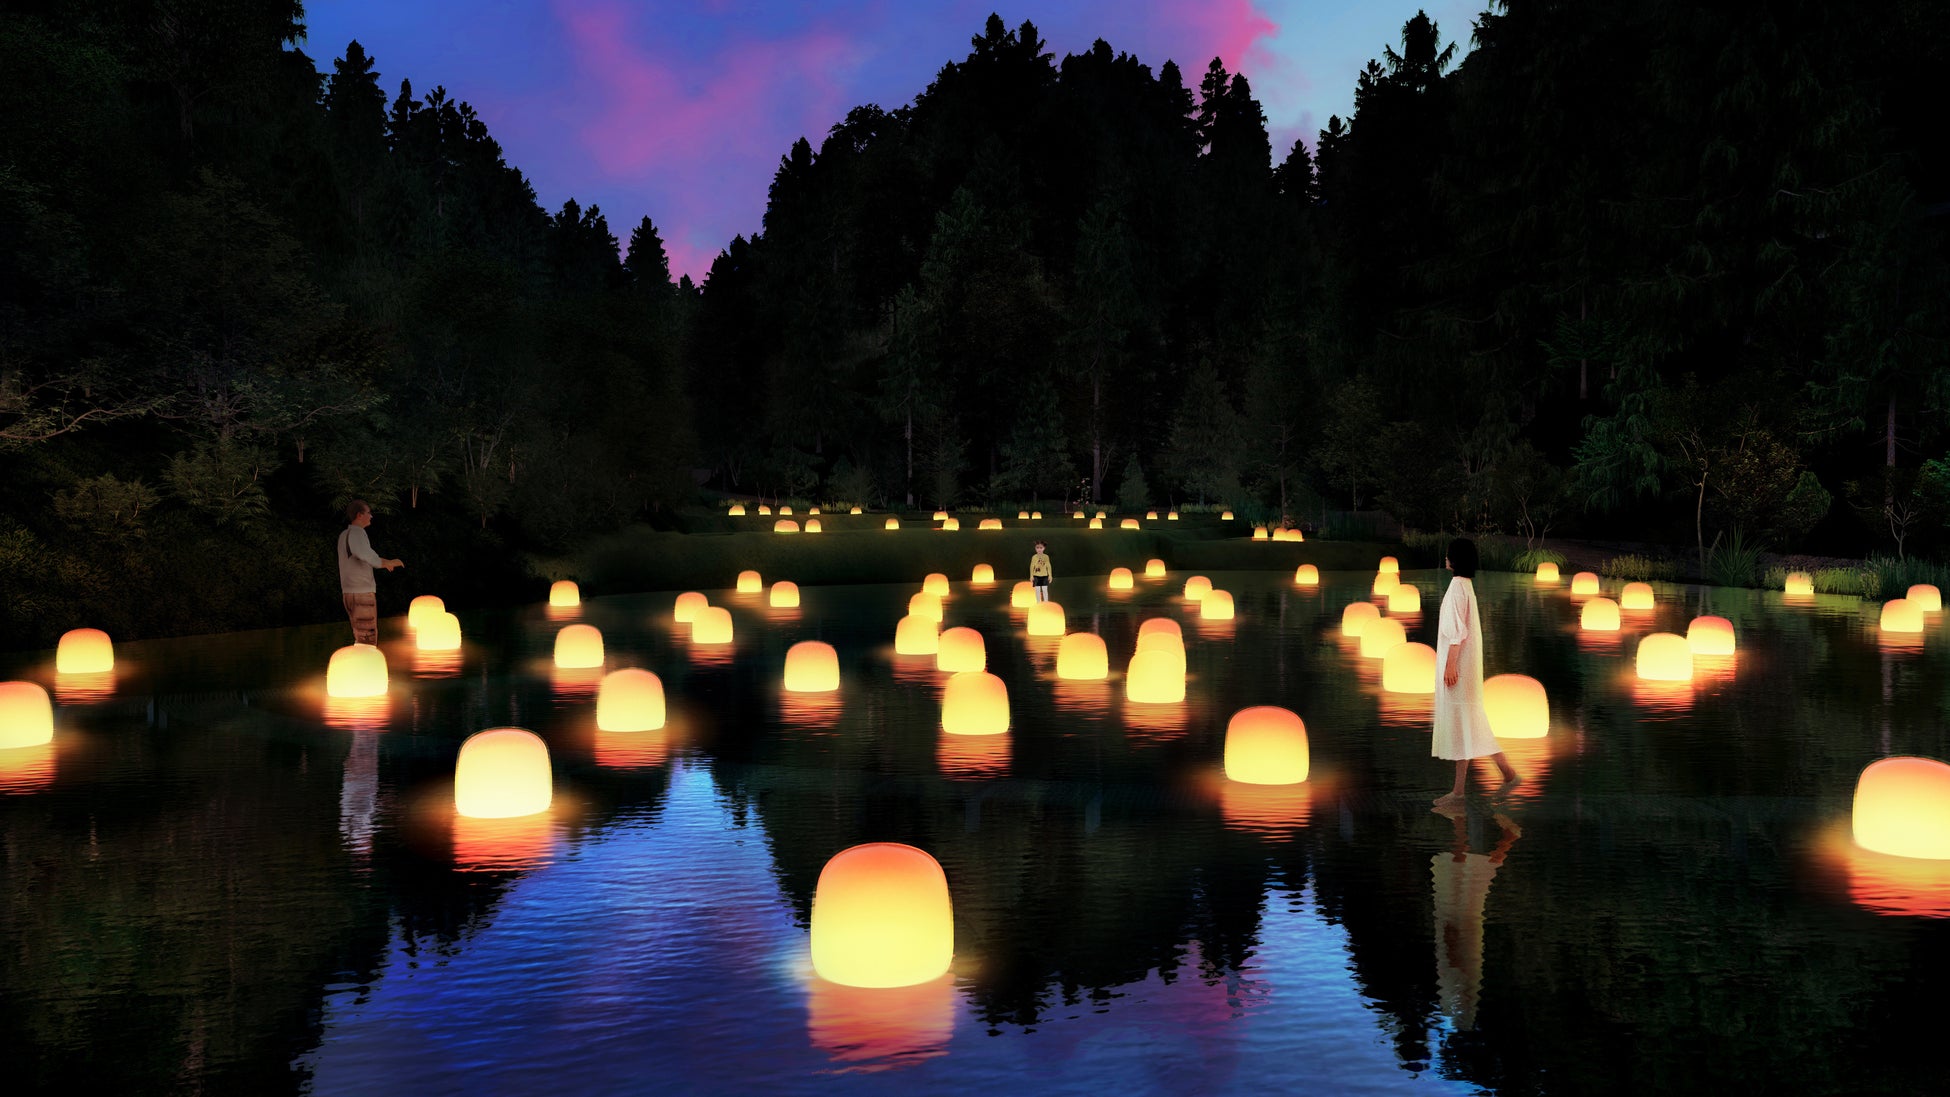 夜の森のミュージアム「チームラボ 幽谷隠田跡」が、茨城・五浦にオープン。森に隠された谷の棚田跡が、光のアート空間に。2024年秋予定